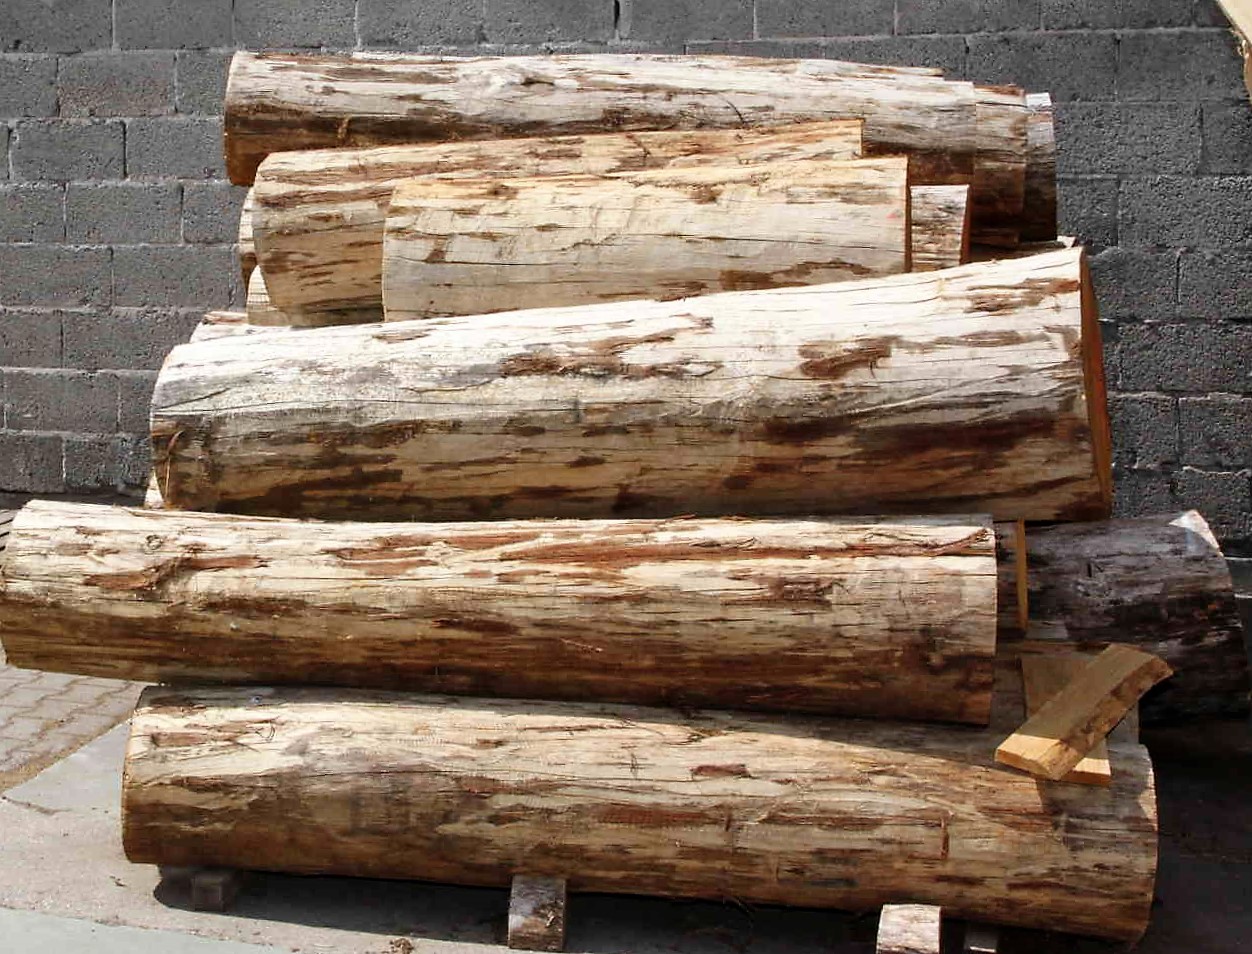 Eichenholz ist im Fassbau sehr beliebt – es gibt aber auch Fässer aus anderen Hölzern, Kastanie oder Akazie etwa